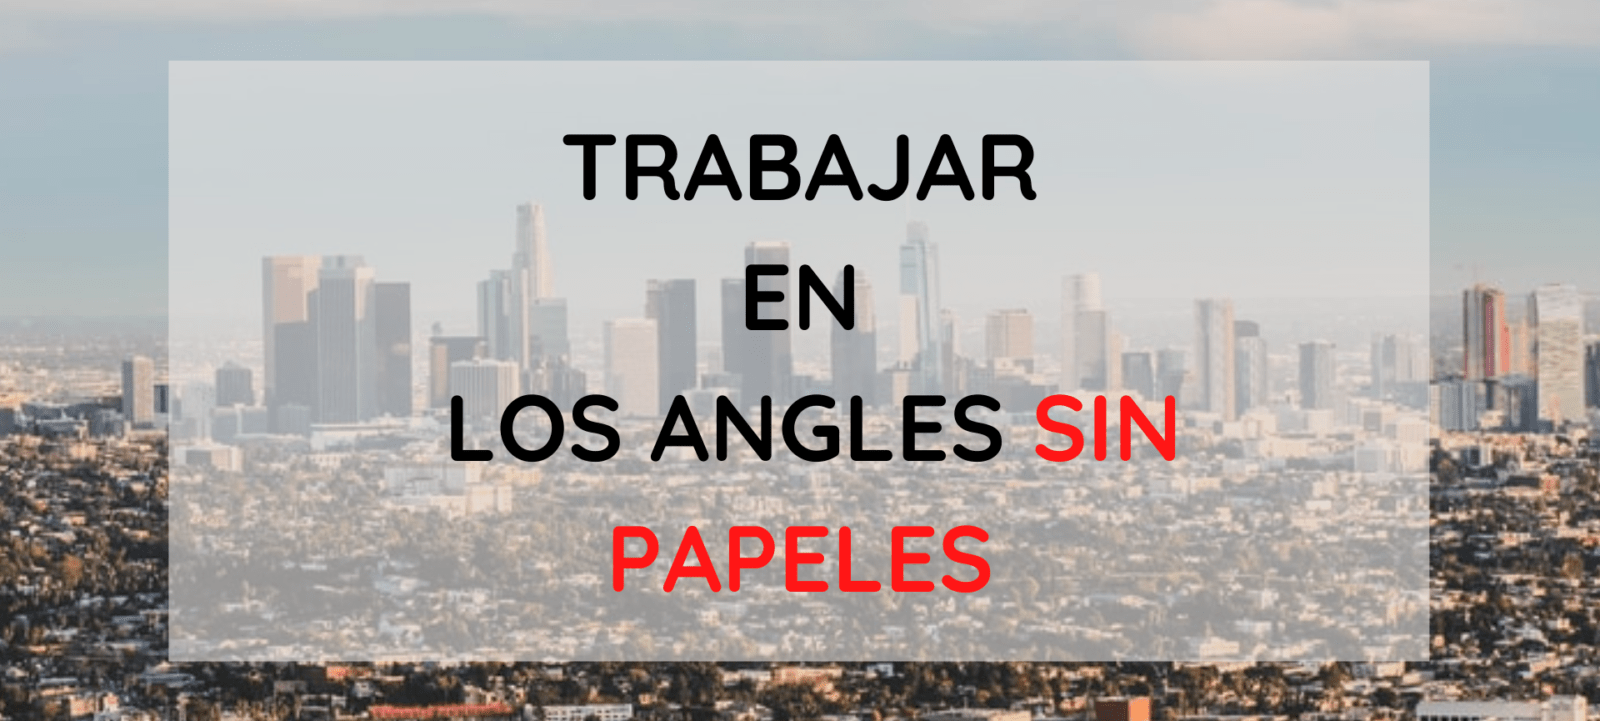 Trabajos en Los Angeles sin papeles, trabajos para latinos indocumentados